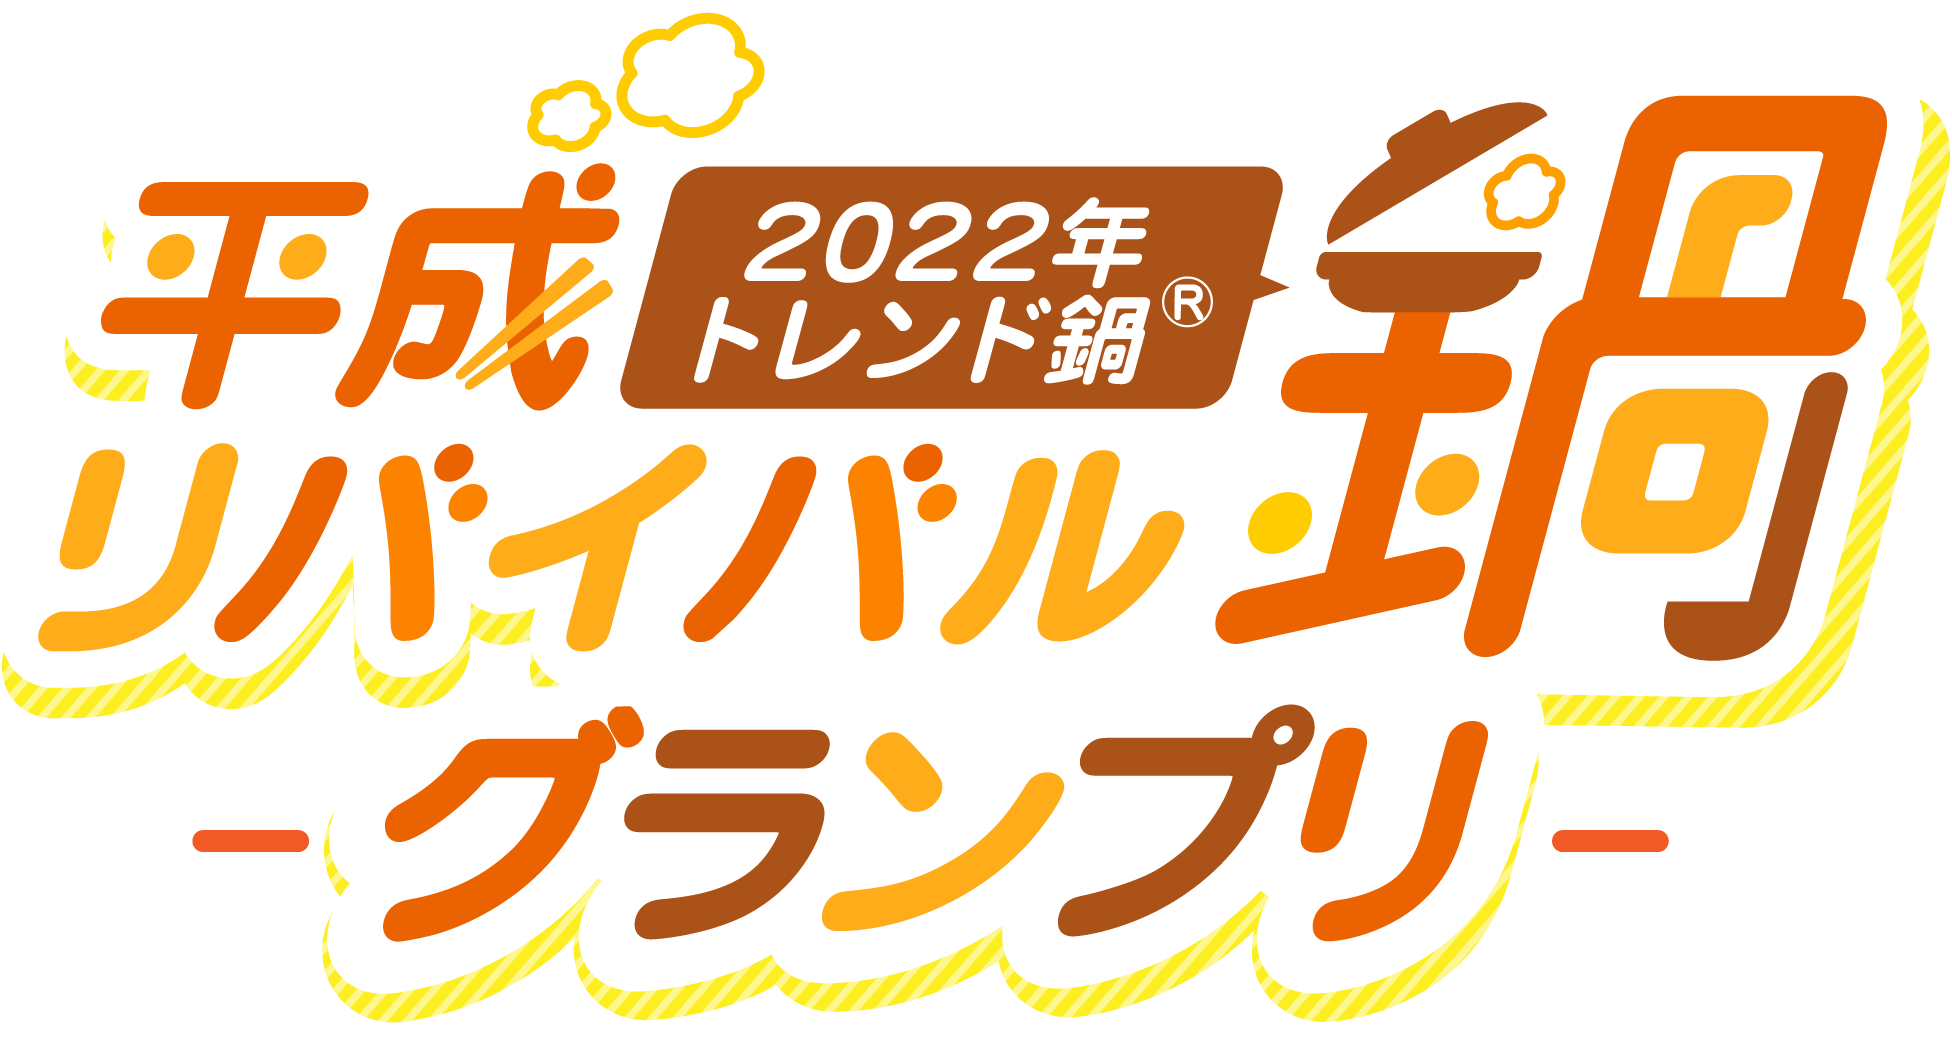 2022年トレンド鍋®「平成リバイバル鍋™」グランプリ